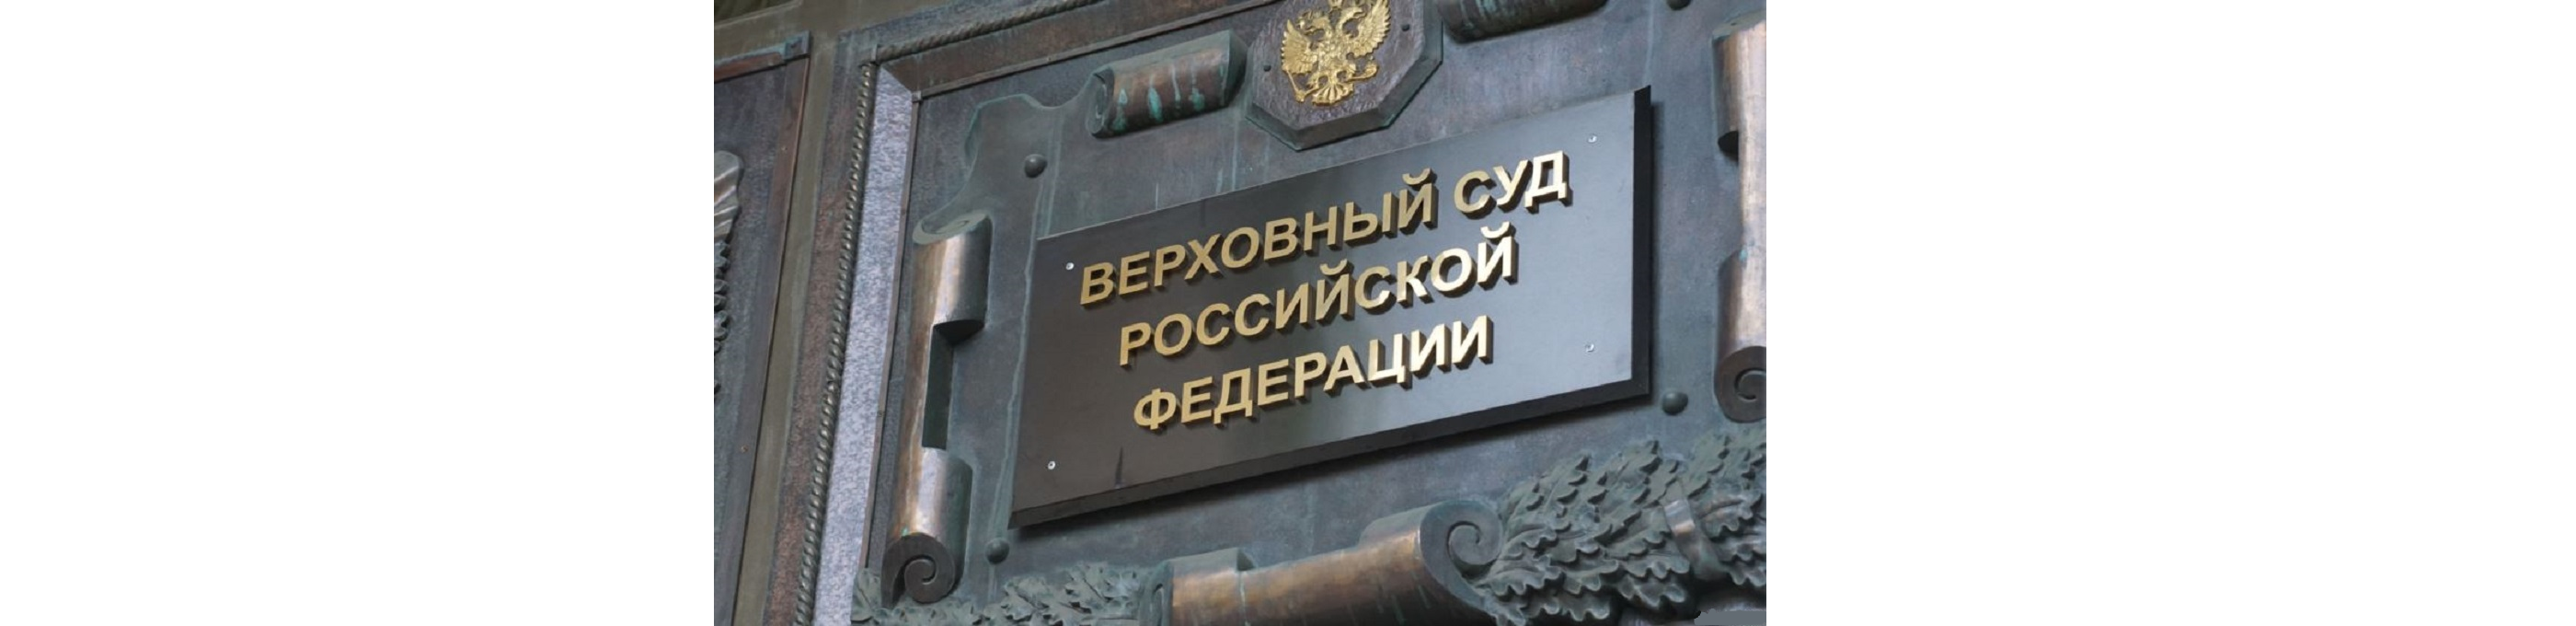 Верховный суд РФ, рассмотрев дело финансовой пирамиды, указал судам на ошибочность их выводов.  